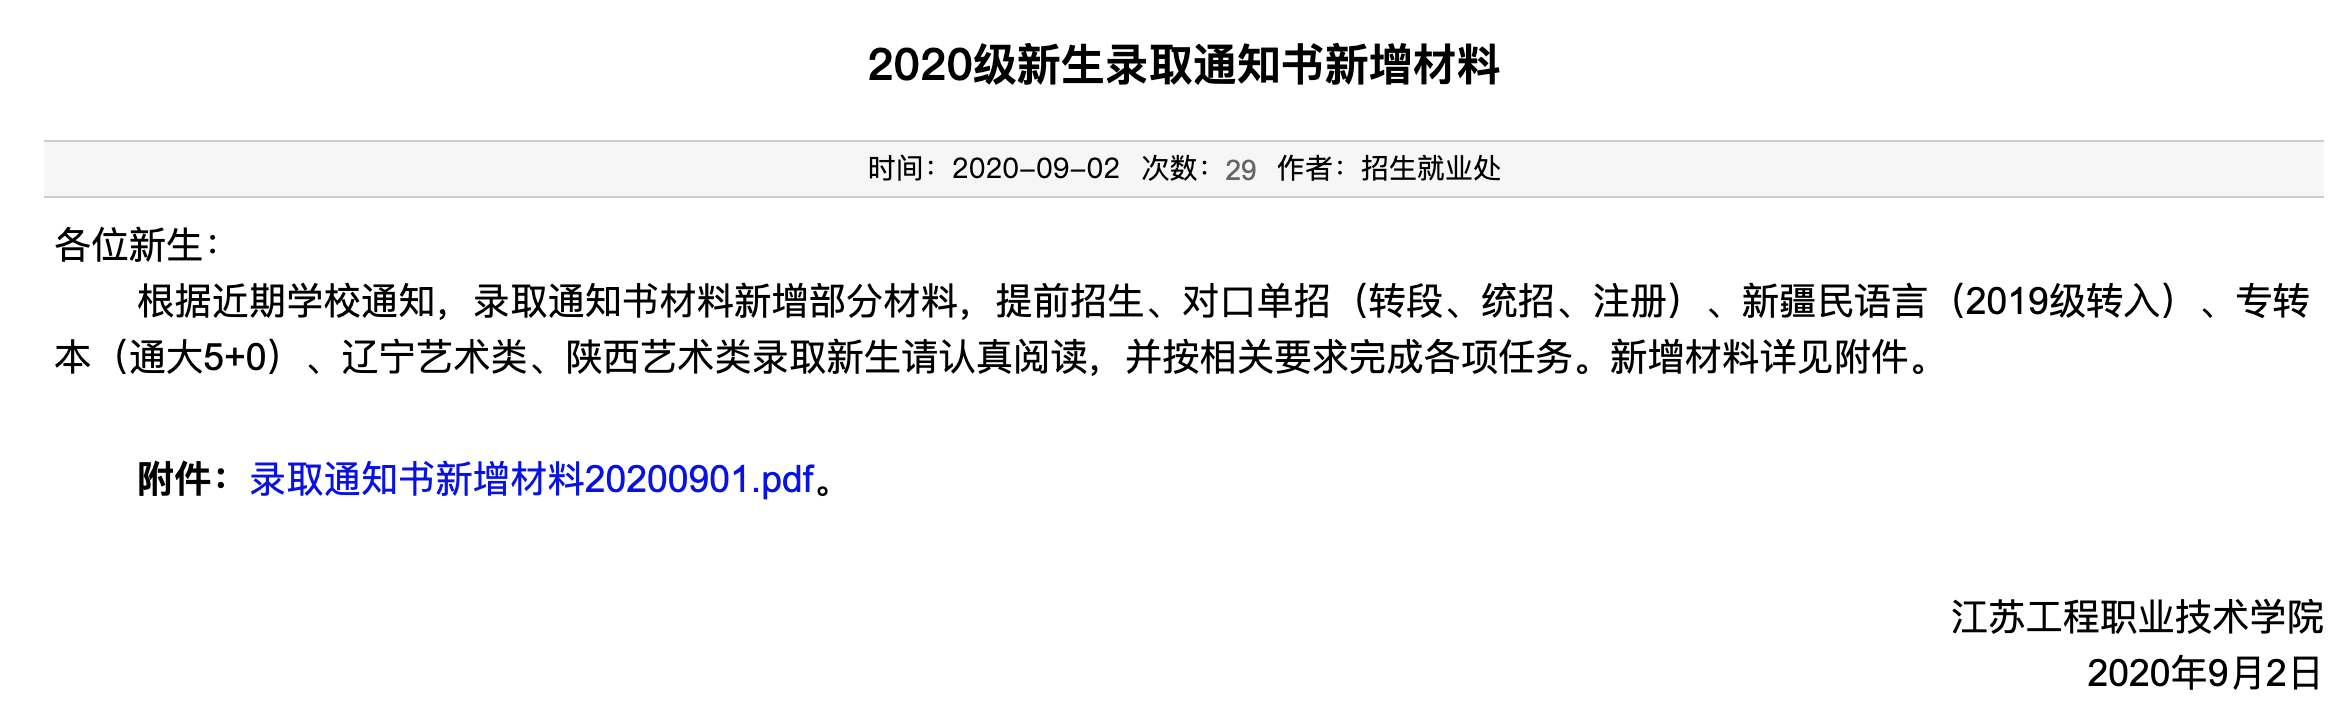 江苏工程职业技术学院2020级新生录取通知书新增材料